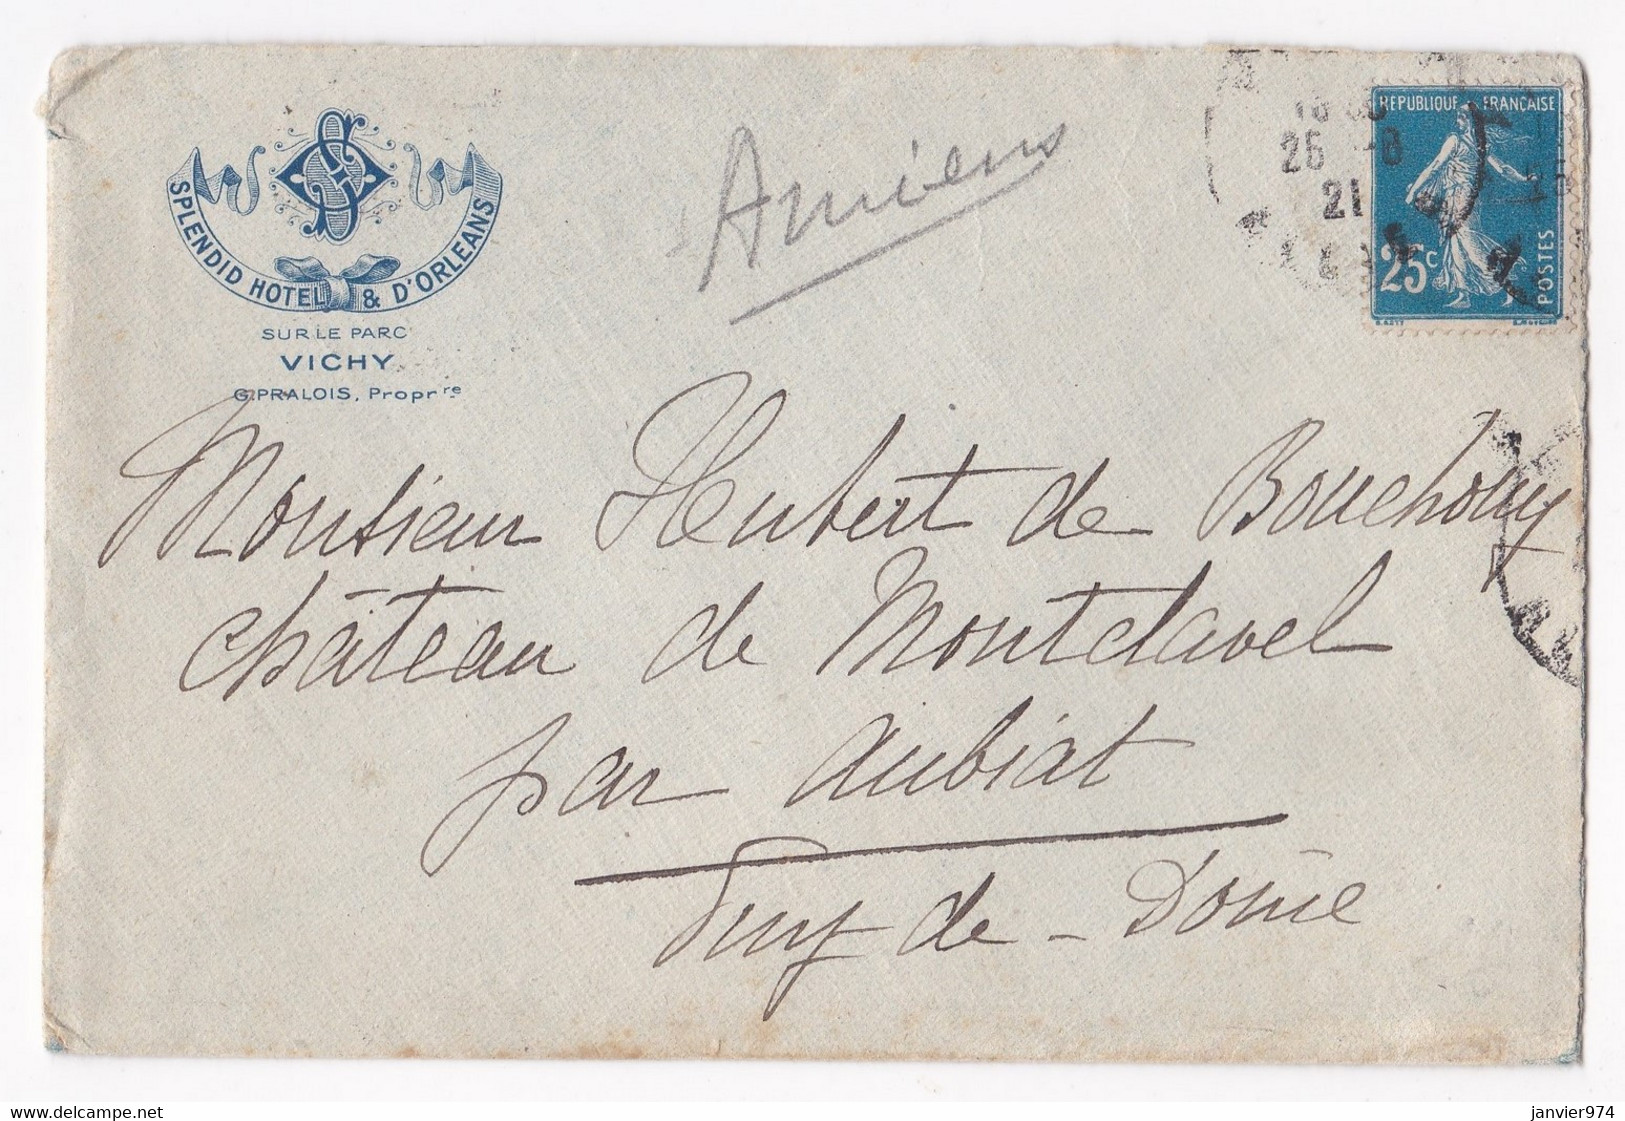 Enveloppe 1921, Splendid Hôtel & D’Orléans Vichy Pour Le Château De Montclavel Aubiat - Covers & Documents